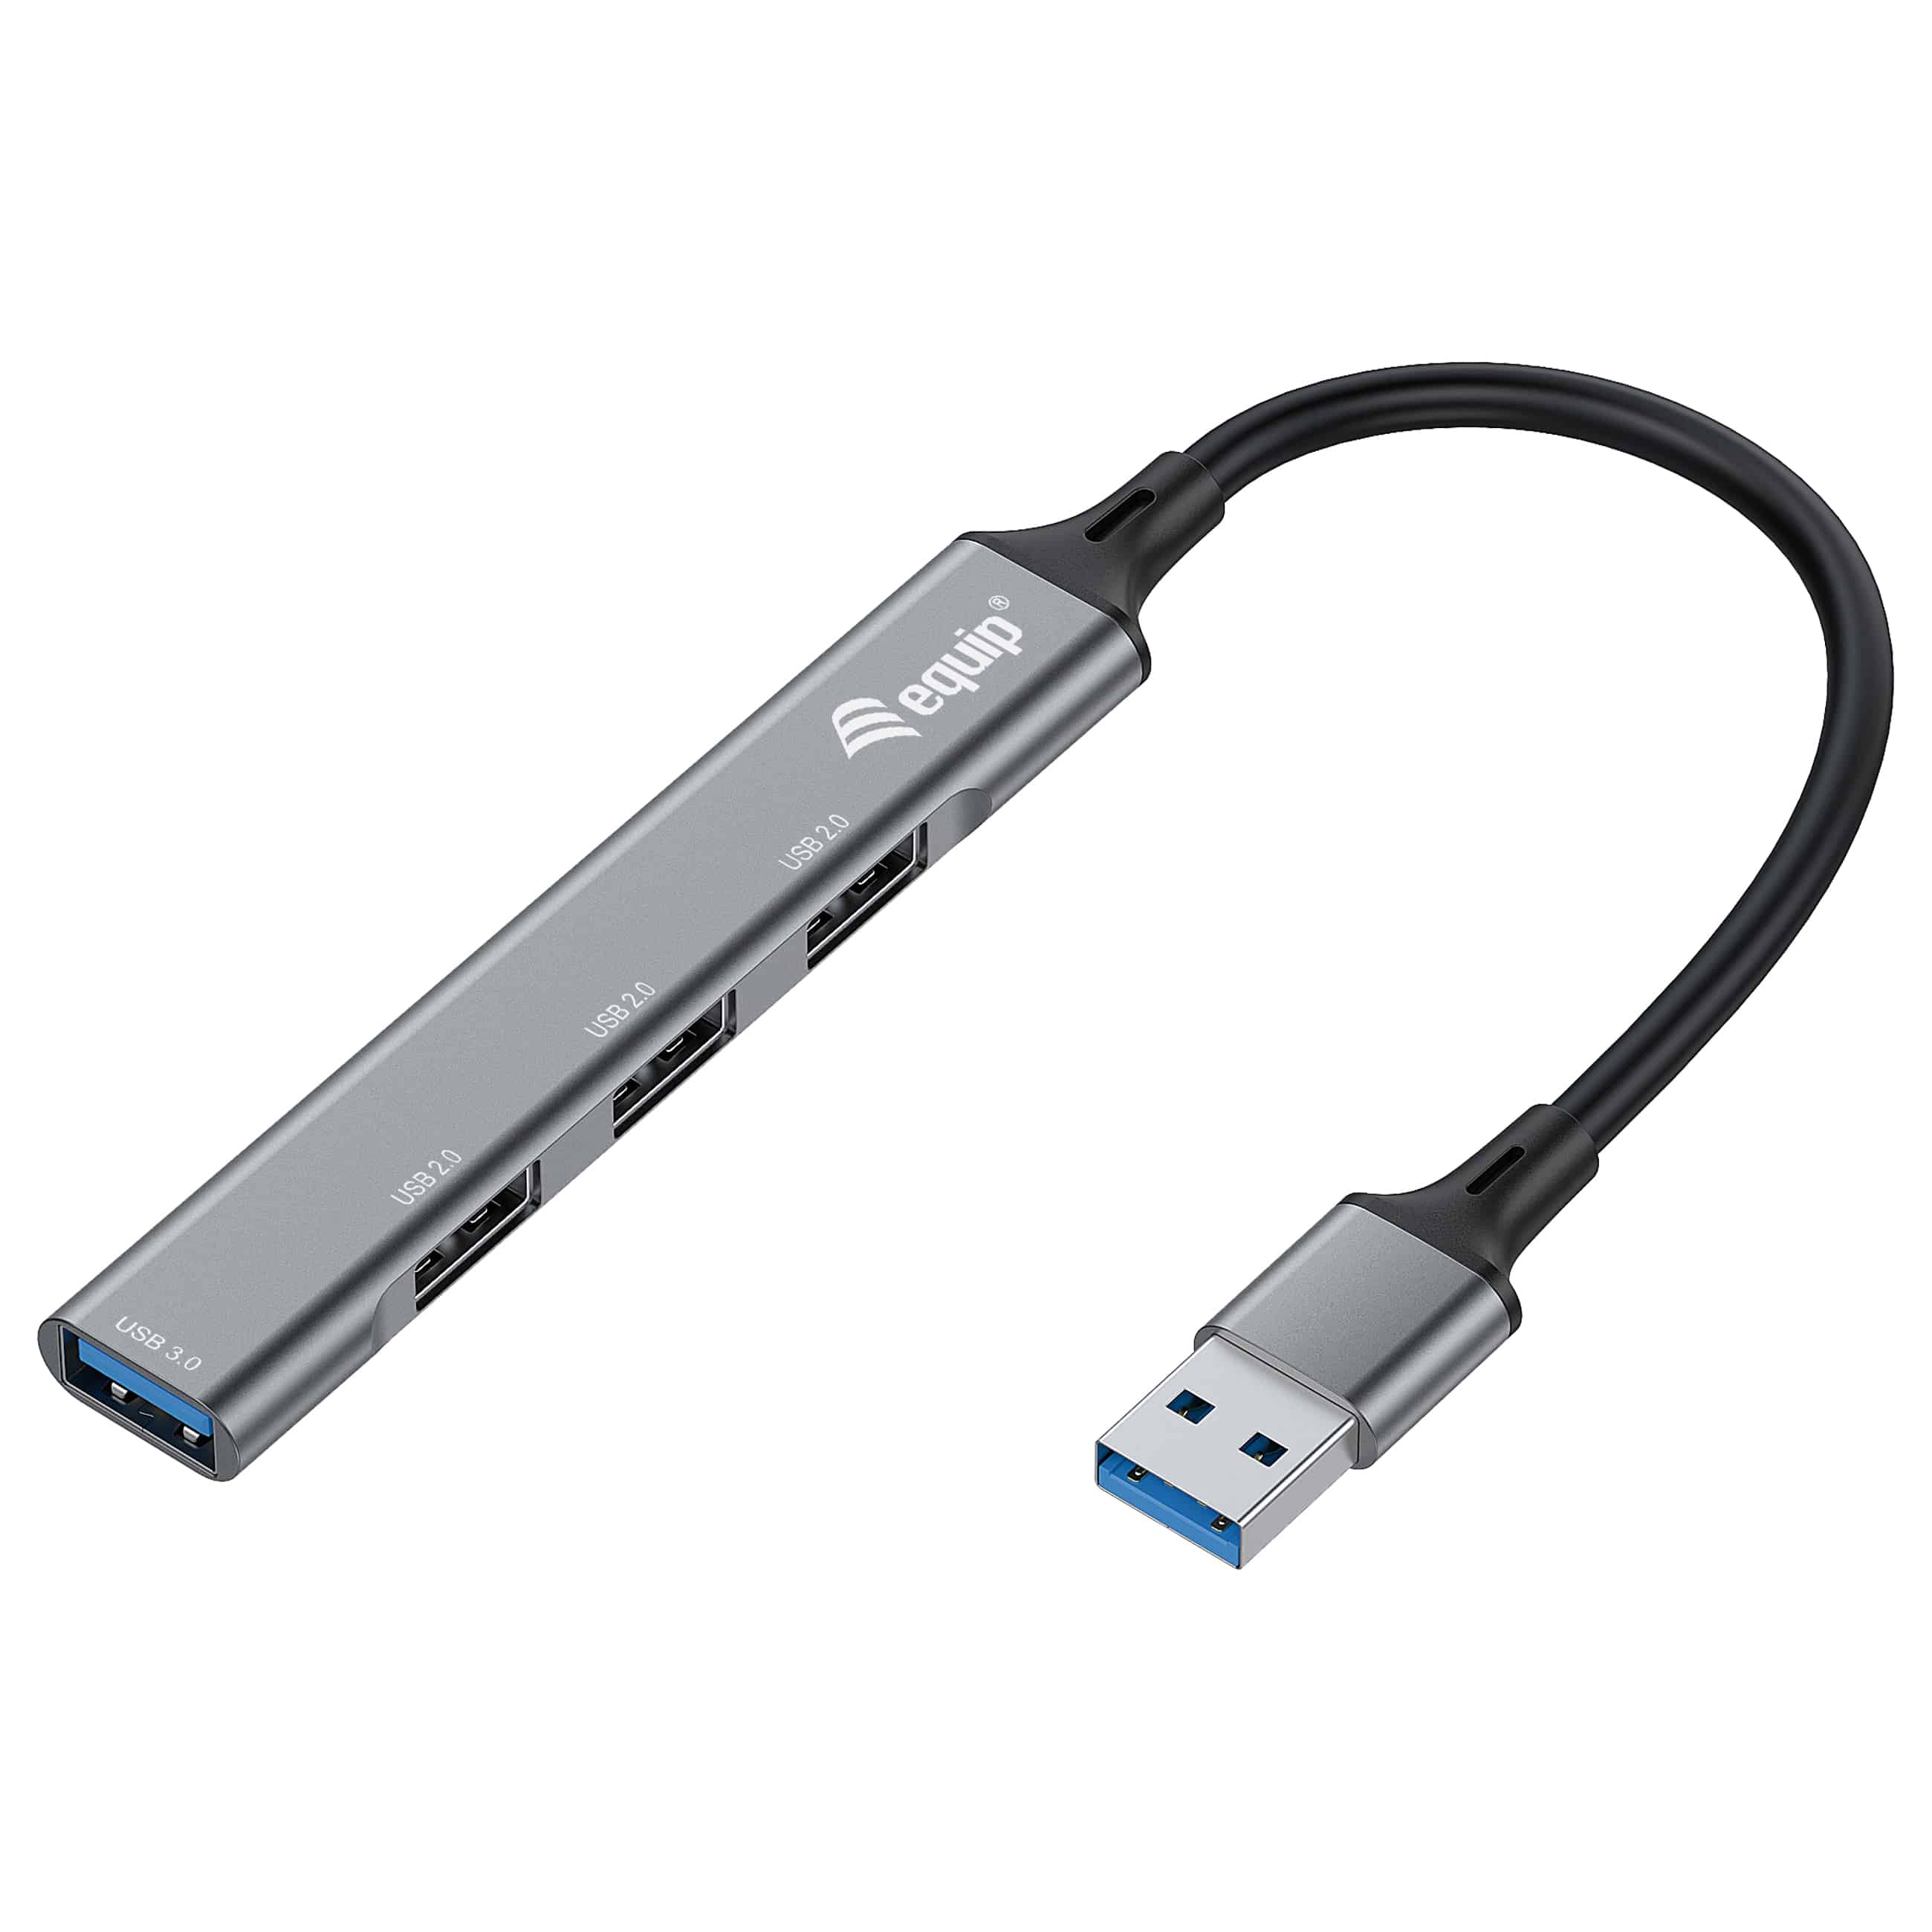 Equip 4-Port USB 3.0 - USB Hub - Grau - Neu